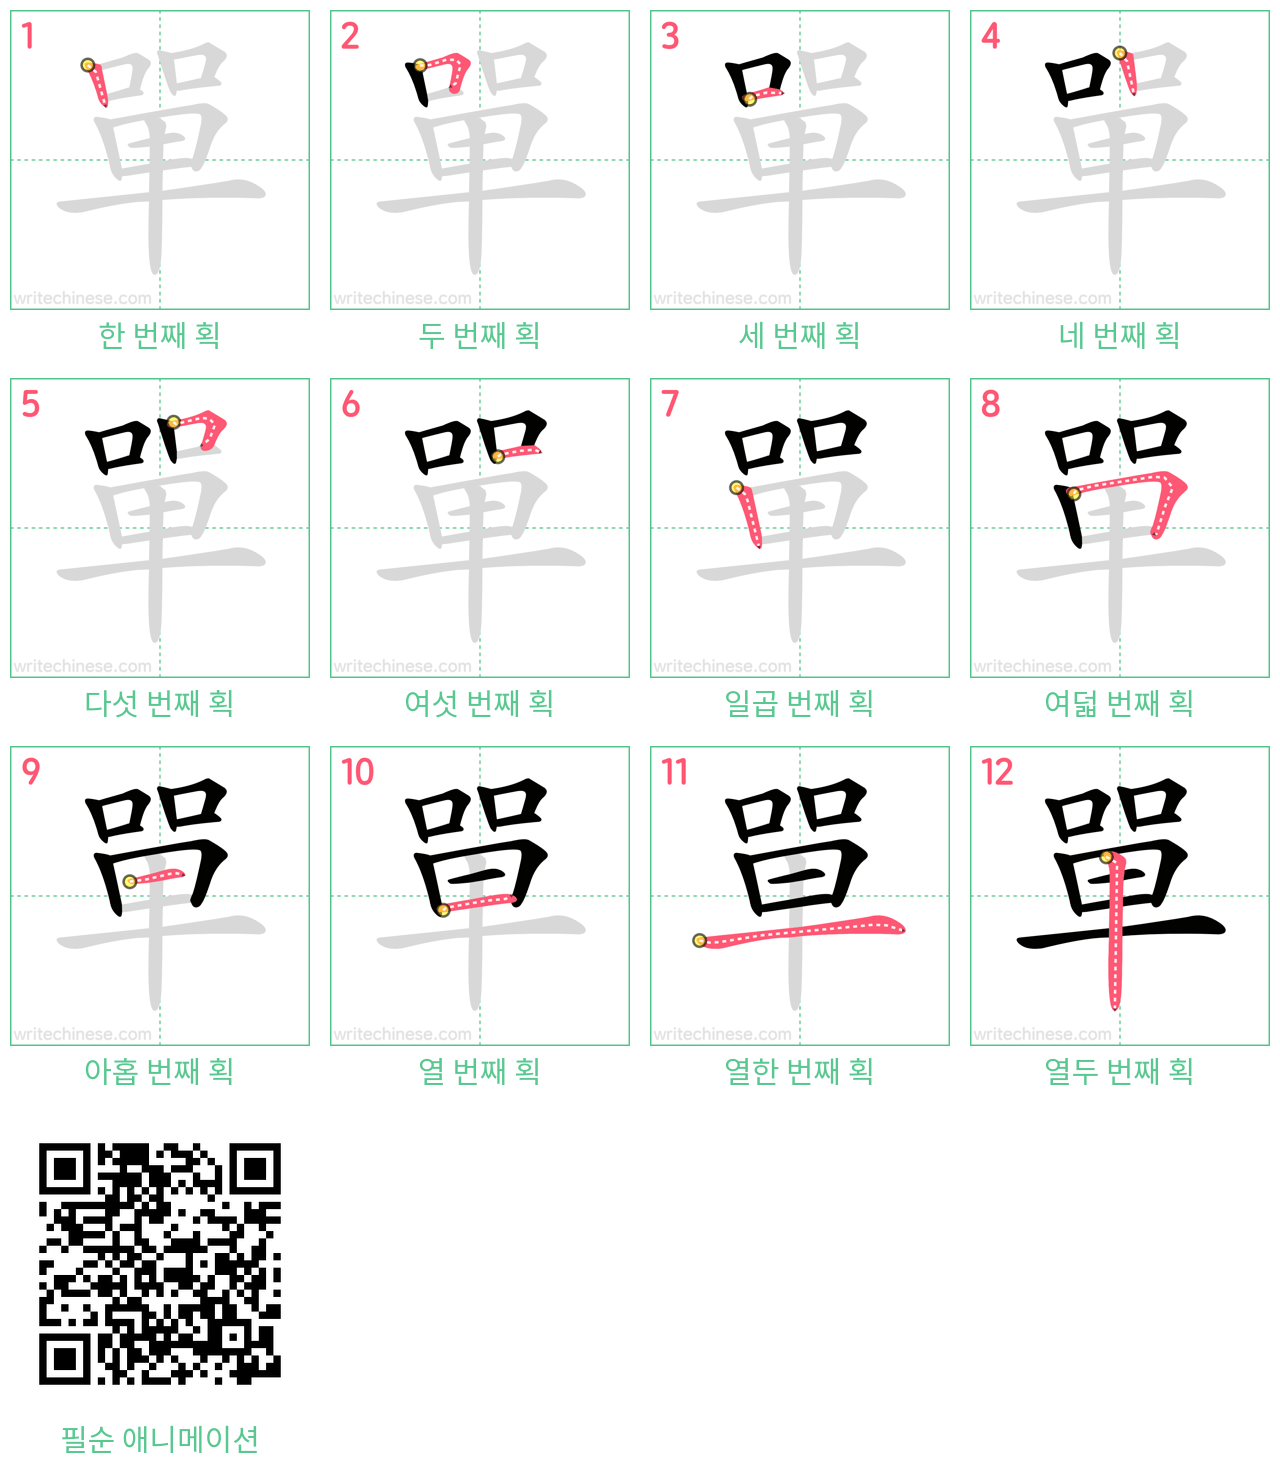 單 step-by-step stroke order diagrams